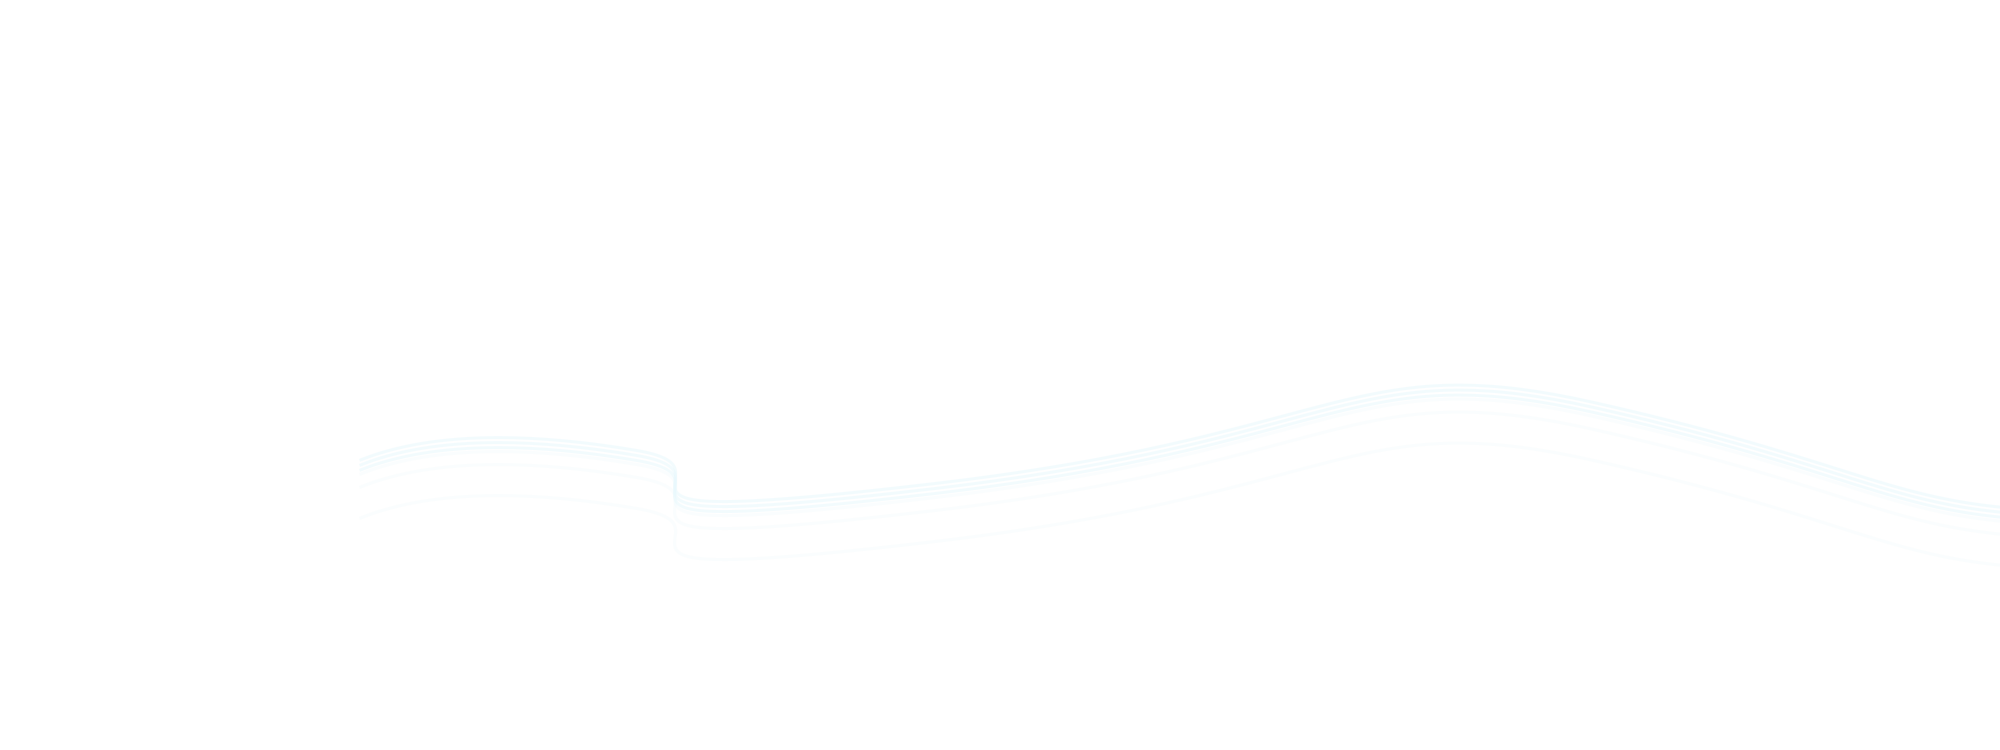 未来の空気を守る会社